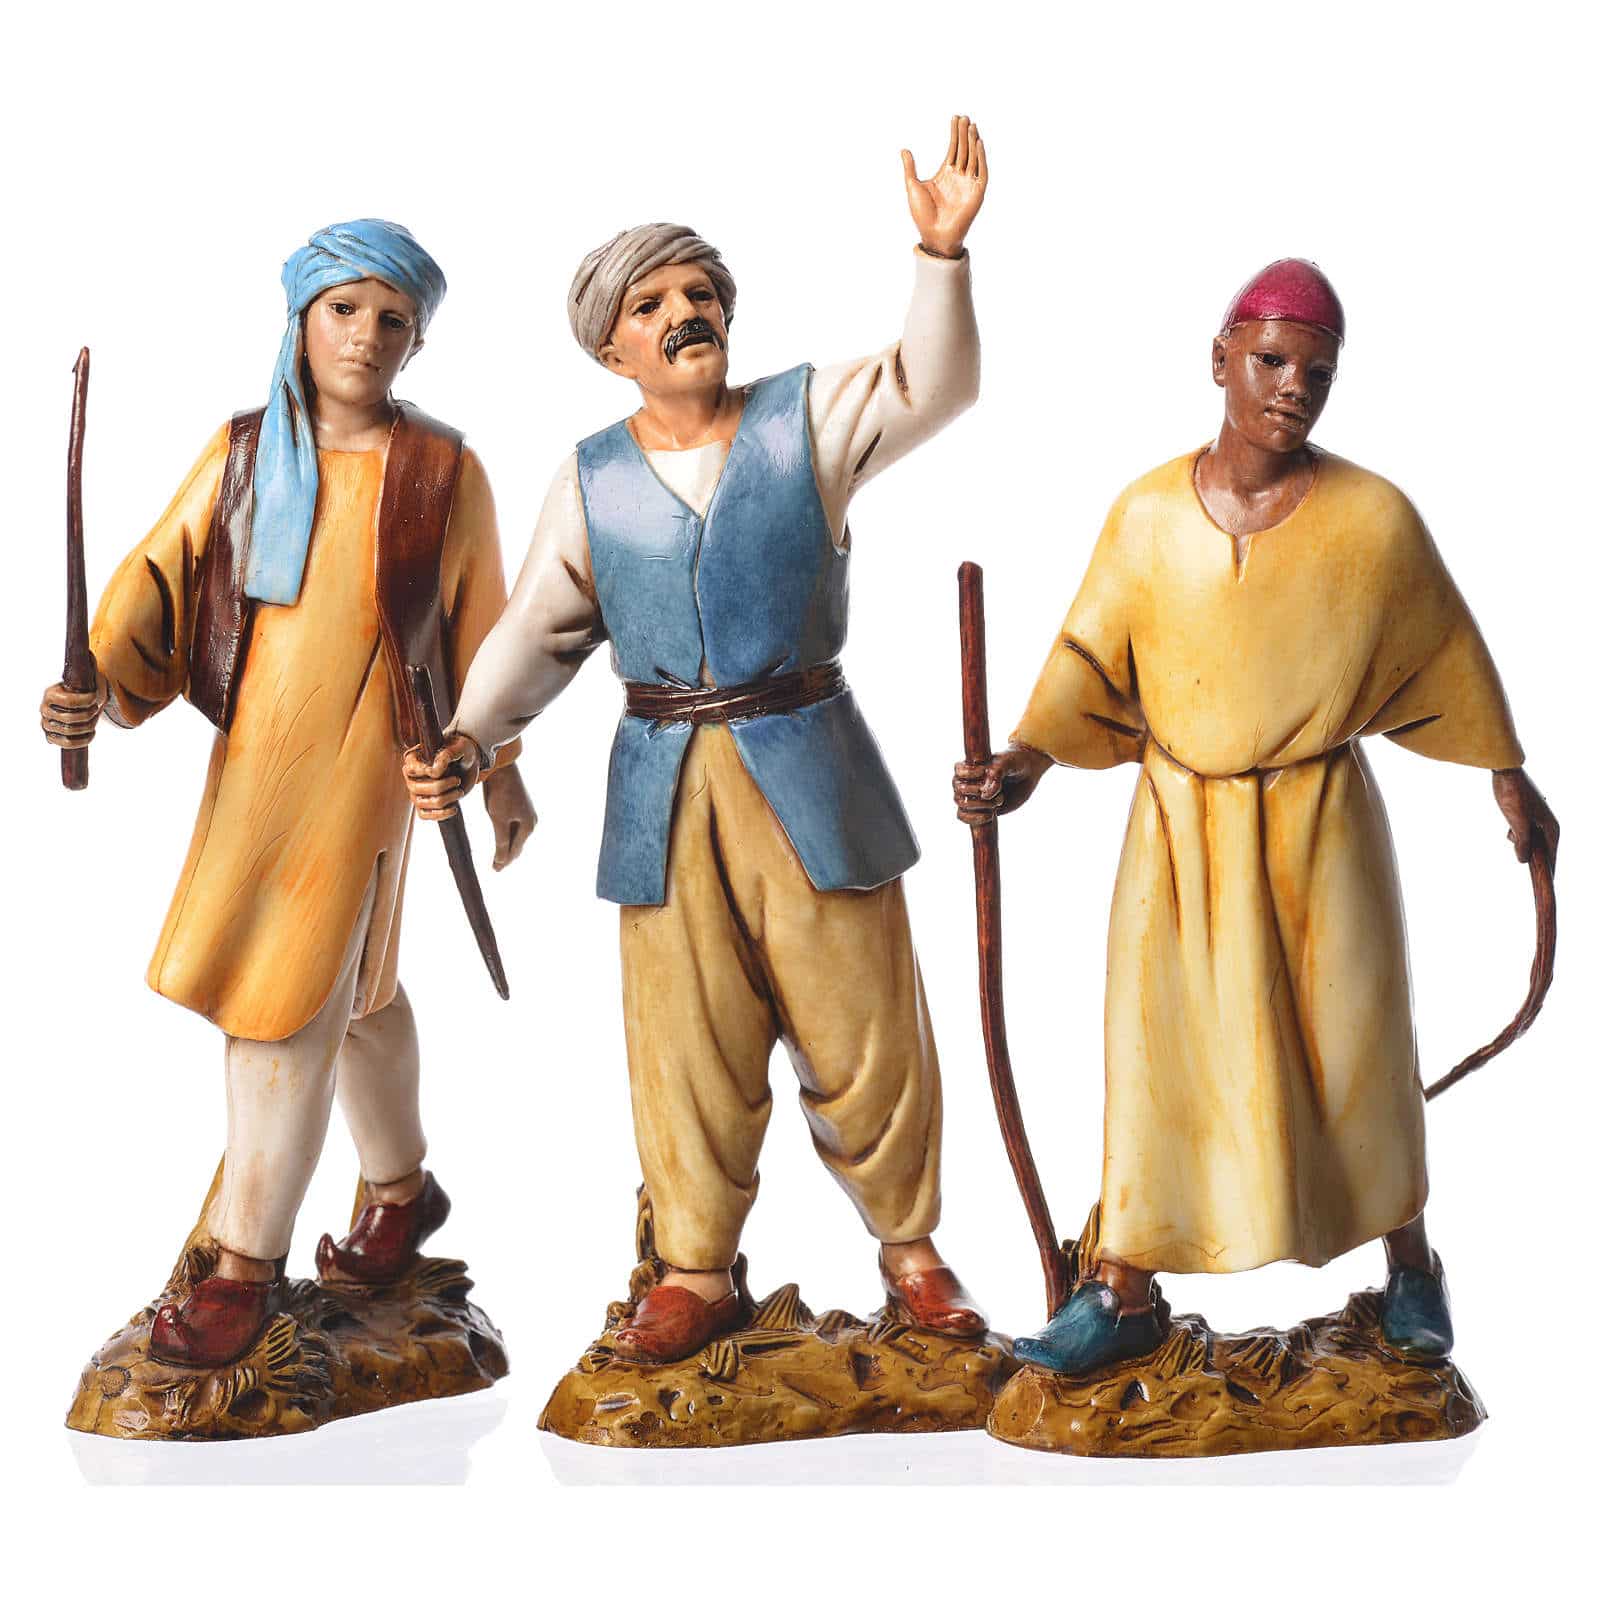 Figuras de oficios: Vaqueros (Moranduzzo) 12 cm con 3 figuras